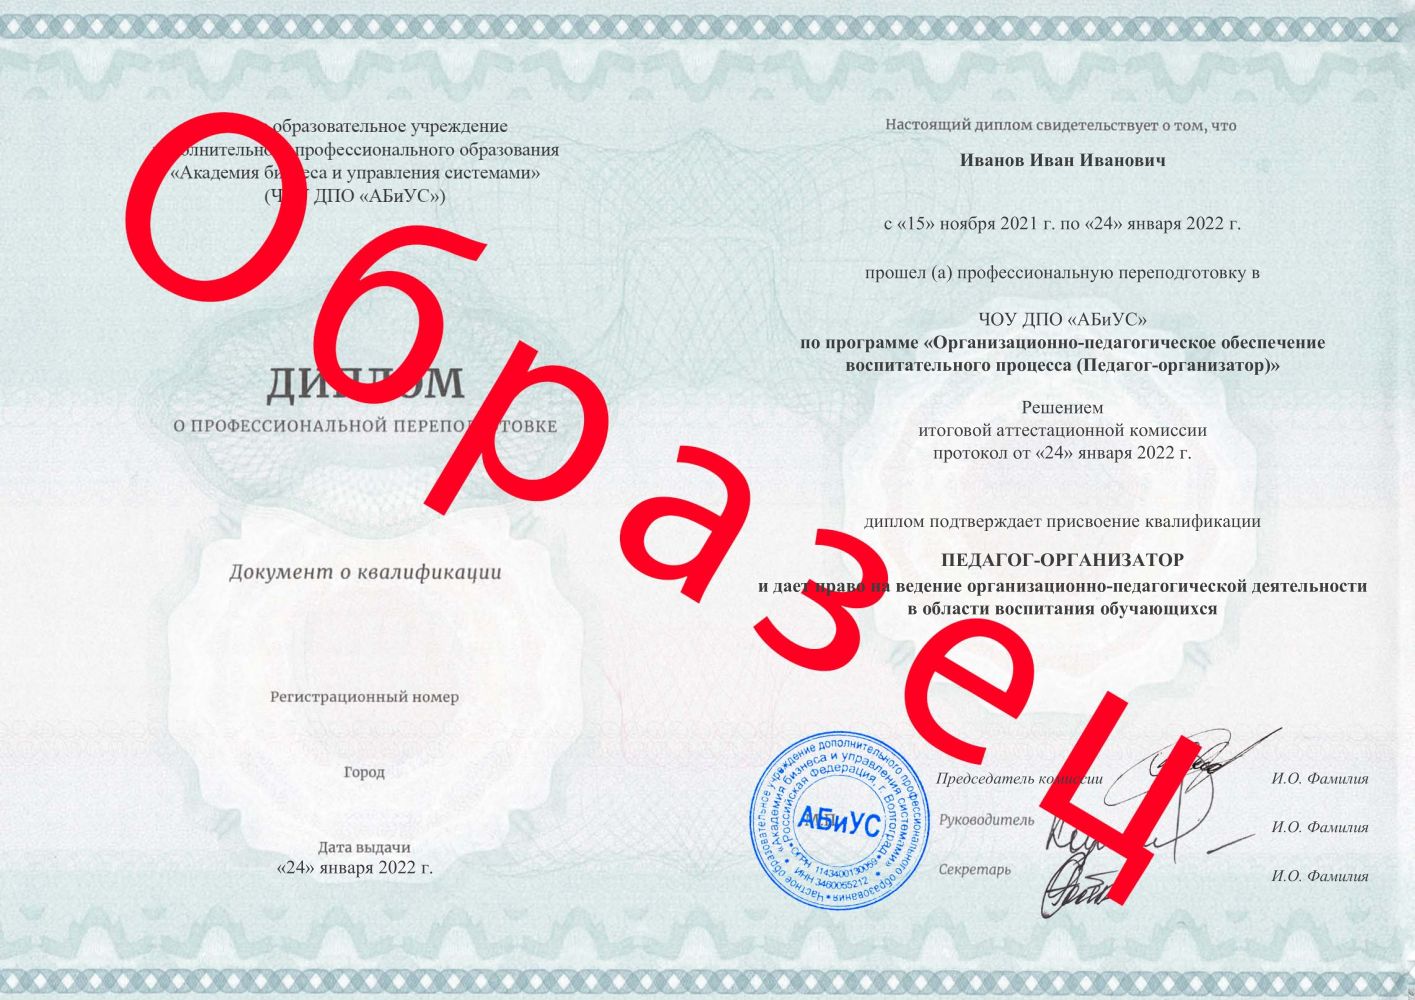 Диплом Организационно-педагогическое обеспечение воспитательного процесса (Педагог-организатор) 260 часов 7063 руб.